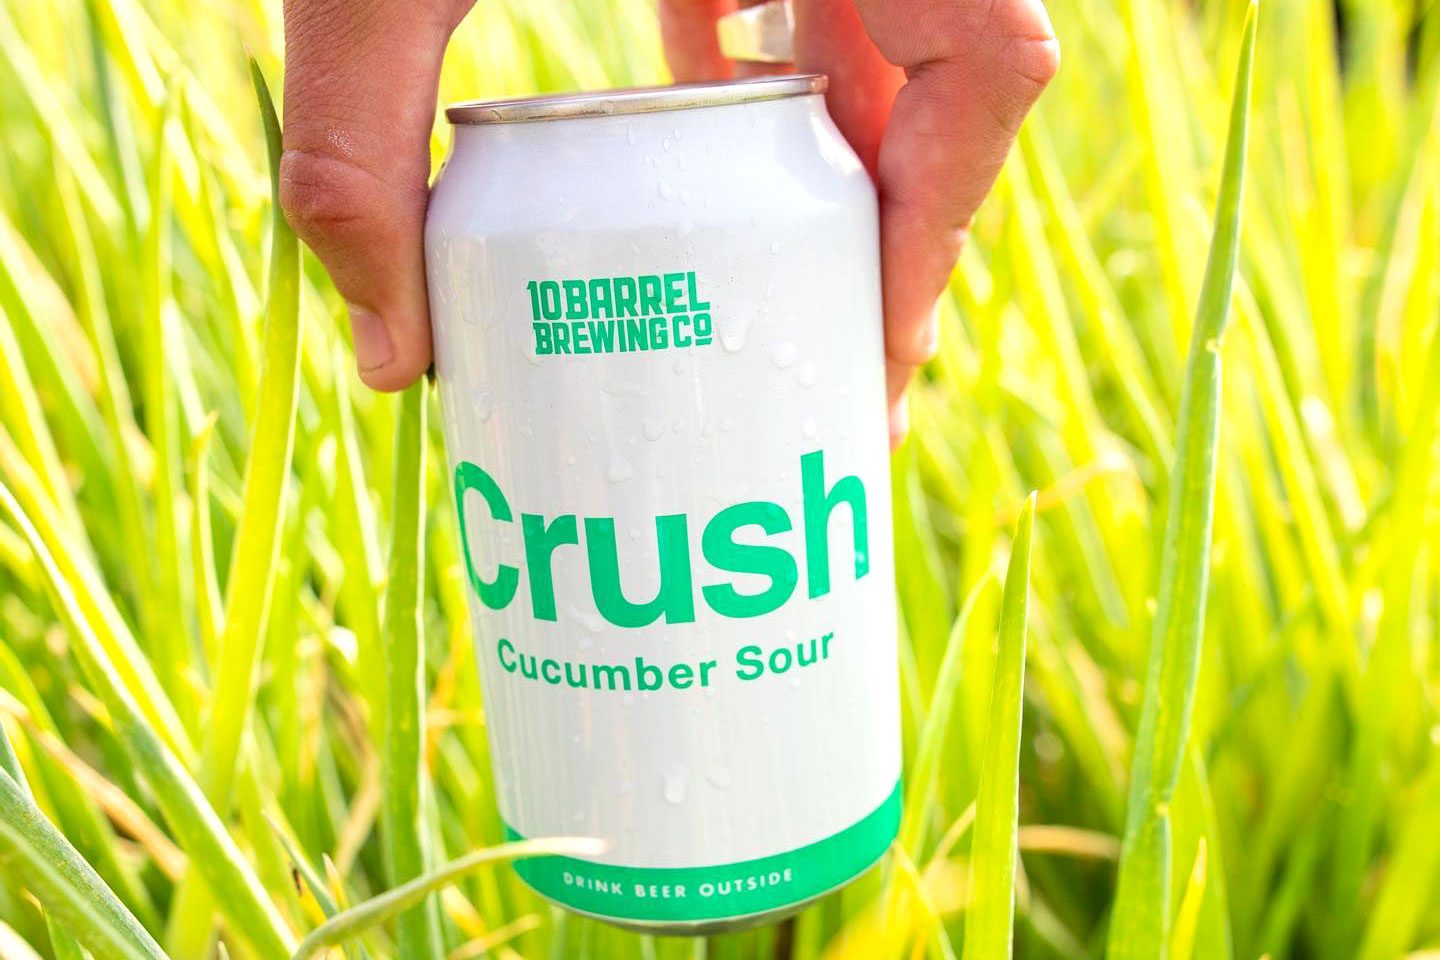 Rd Beer Oregon 10 Barrel Brewing Co. Cucumber Crush Via 10barrelbrewingcompany Facebook.com